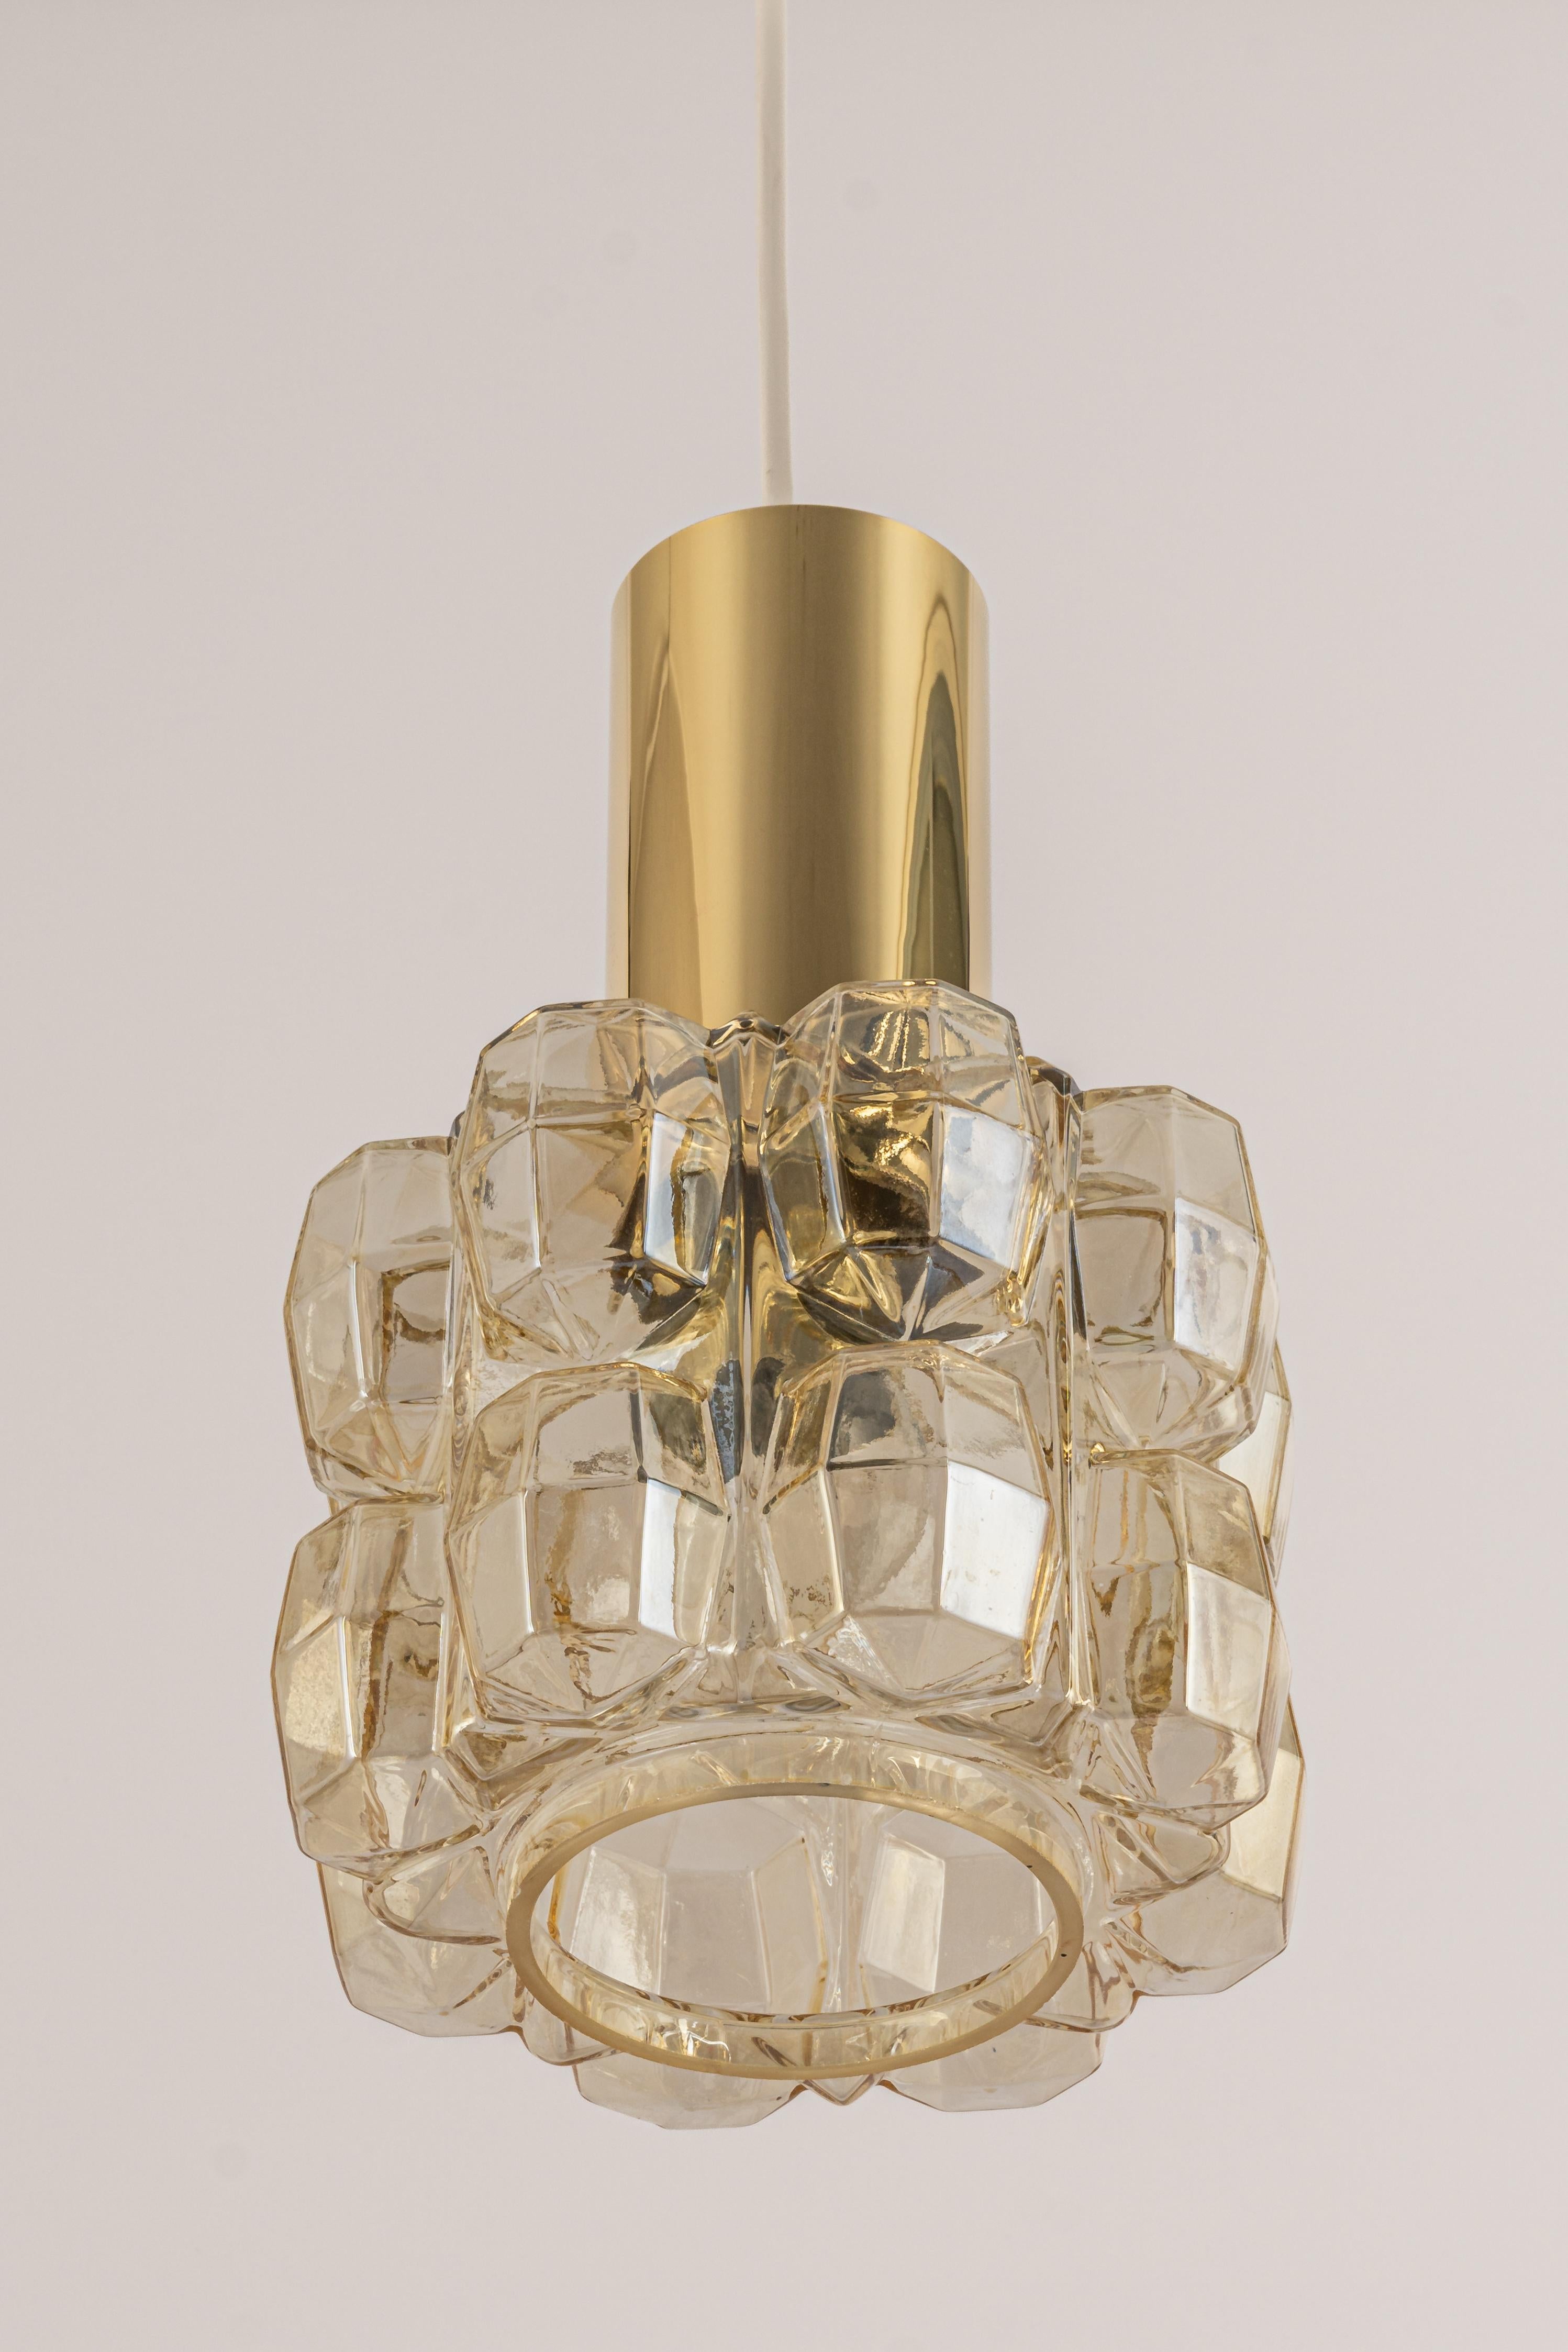 1 de 2 Petites pendentifs en verre bullé (avec des coupelles en laiton) de couleur fumée légère, créés par Helena Tynell pour Limburg, fabriqués en Allemagne, vers les années 1970

Douilles : Il faut 1 ampoule standard E27.
Les ampoules ne sont